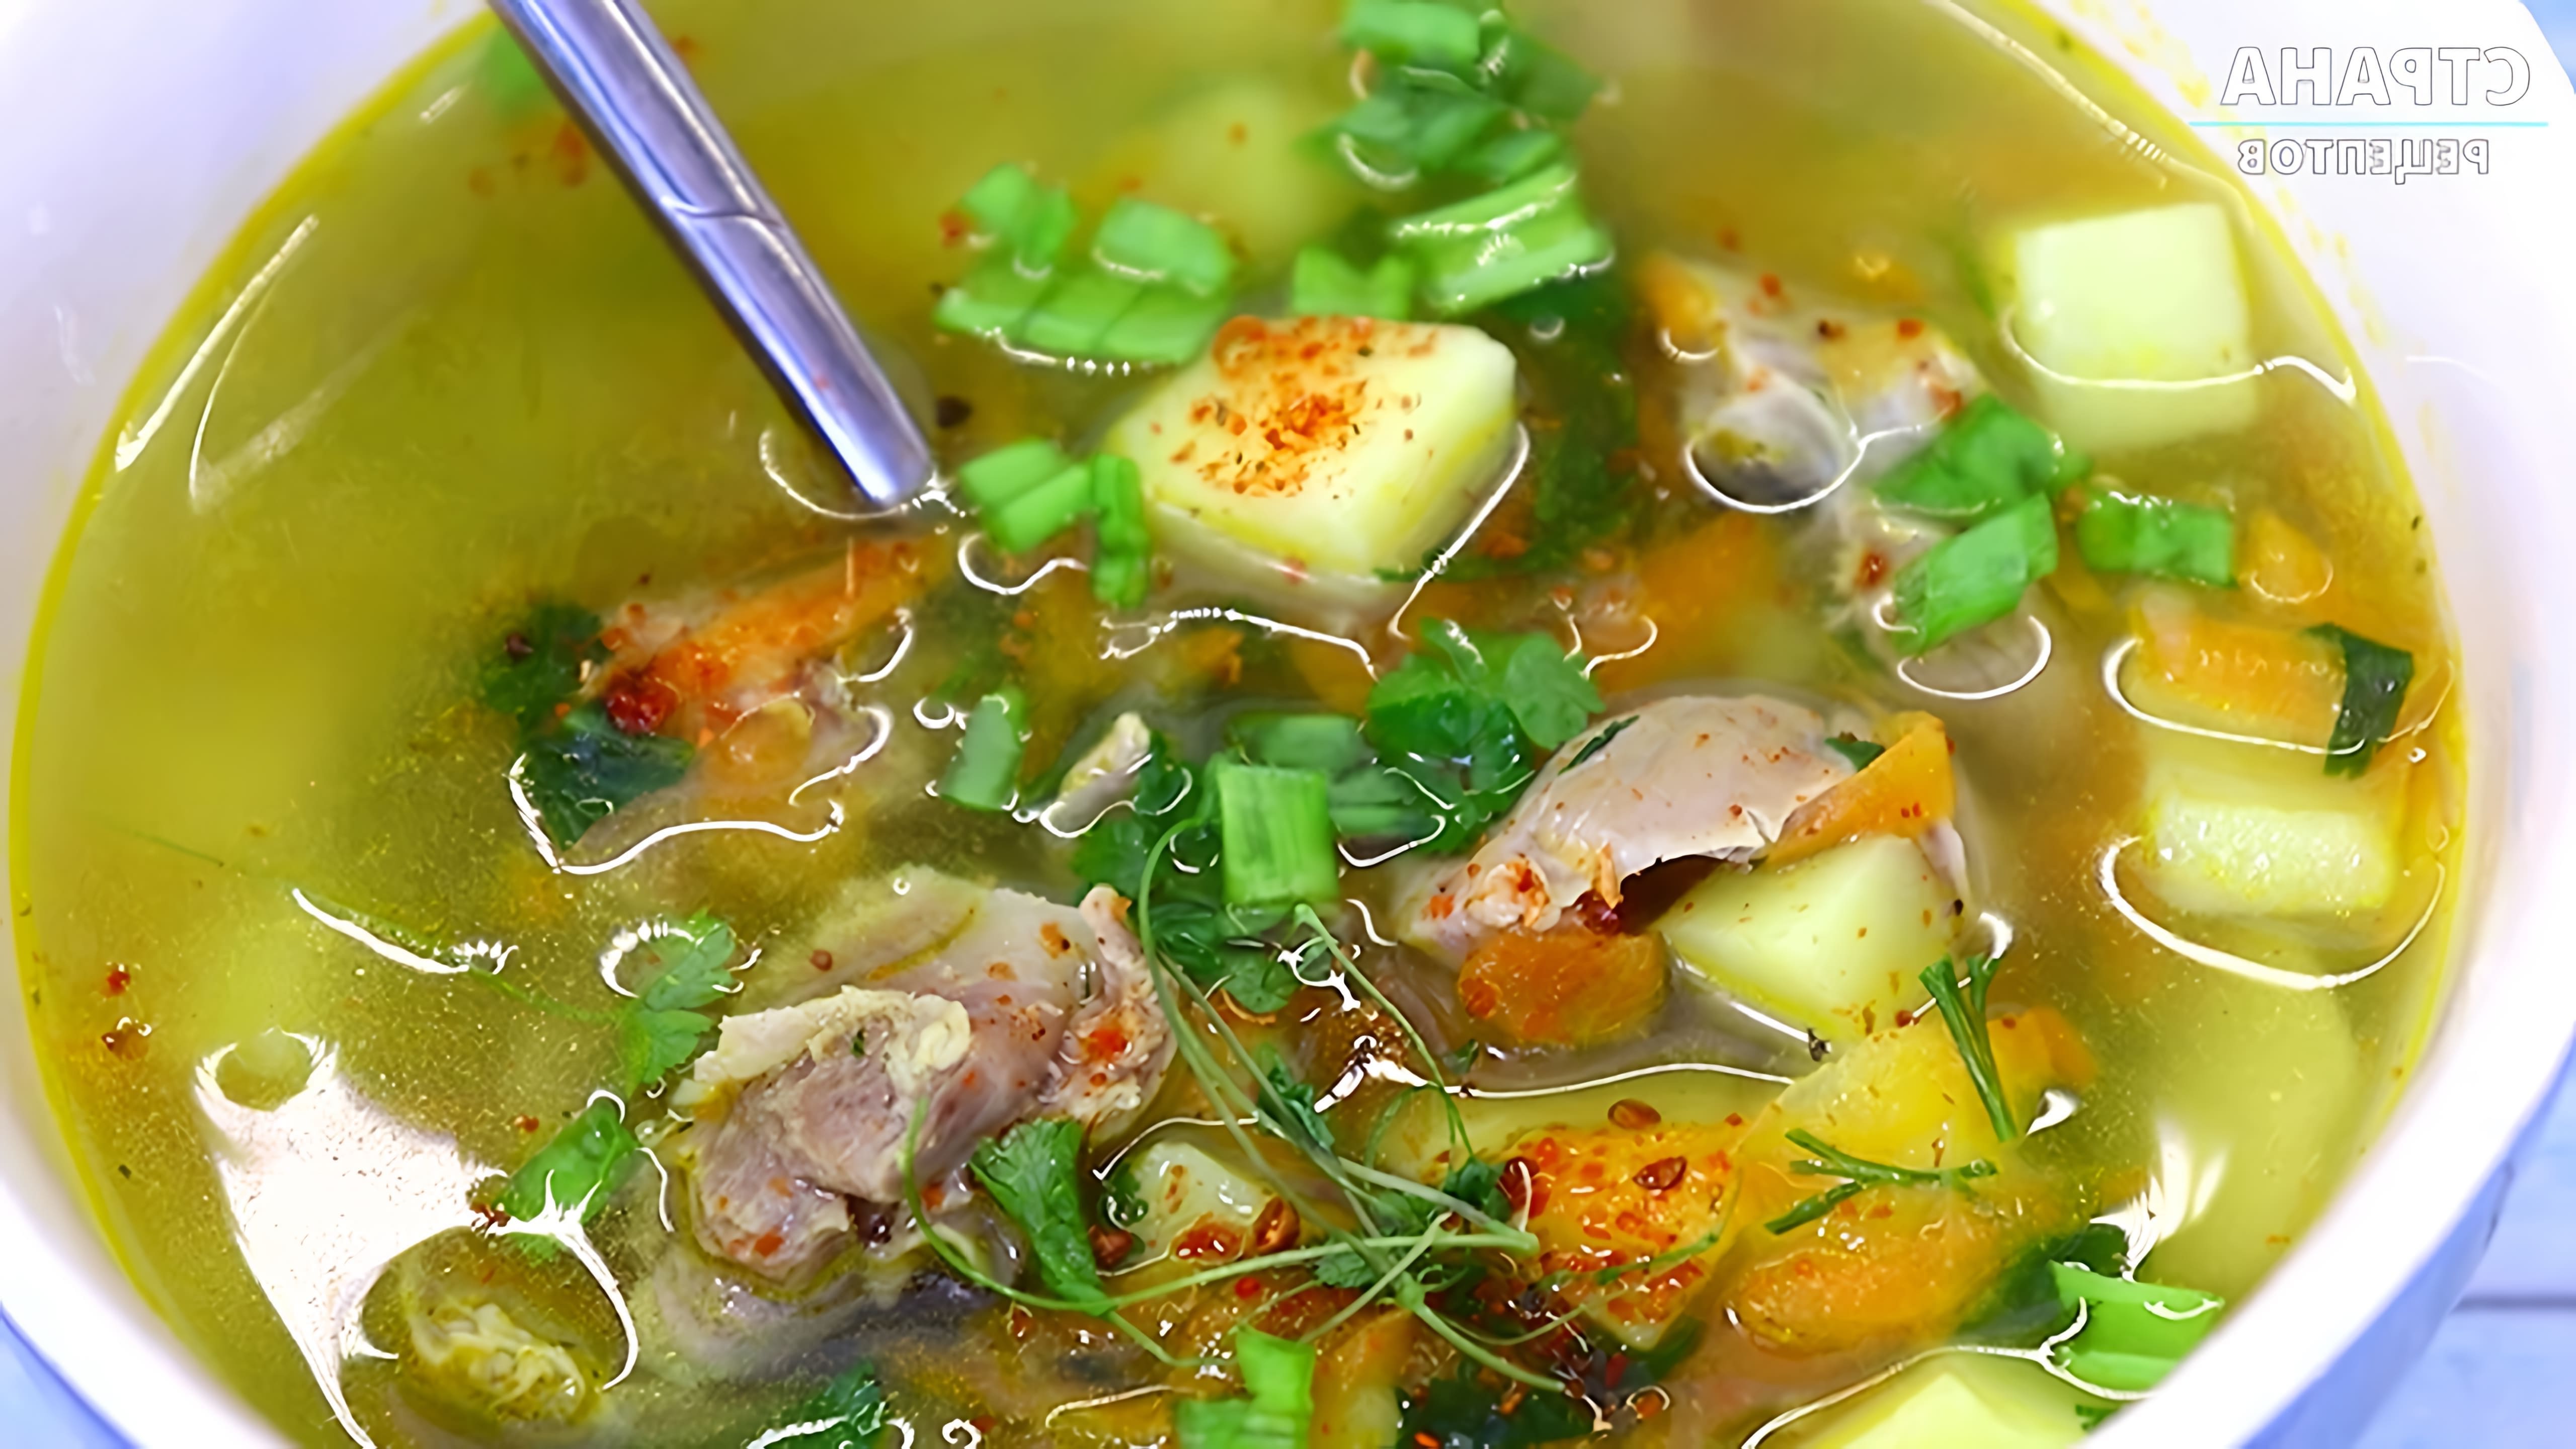 В этом видео демонстрируется процесс приготовления простого и вкусного супа из куриных желудков